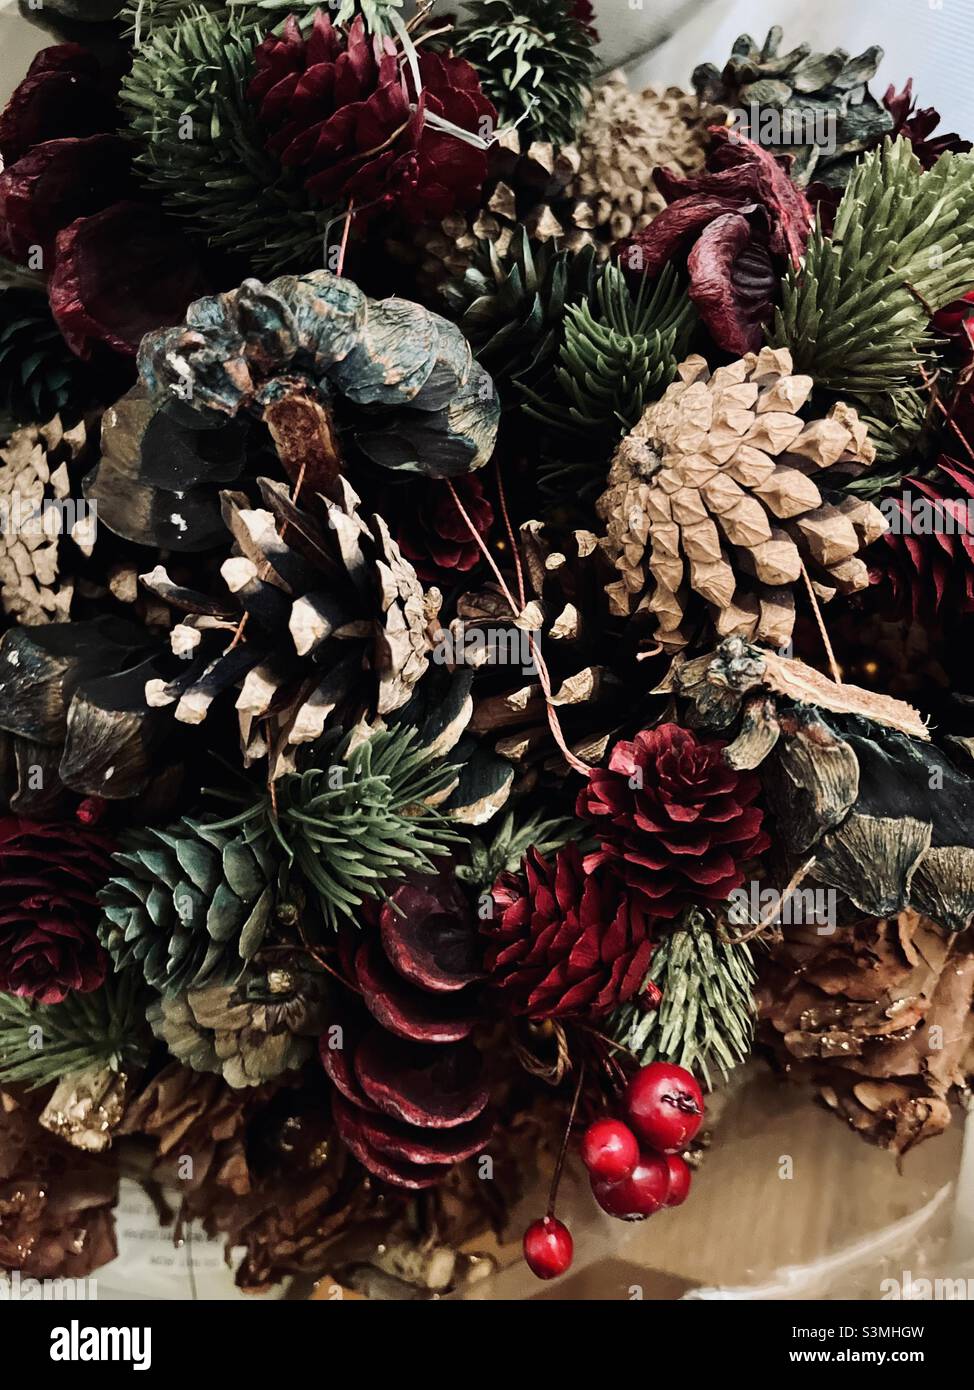 Weihnachtsdekoration Backen - Kunsthandwerk mit natürlichen Ressourcen wie getrocknete Beeren Eicheln Kiefernzweige und Blätter Stockfoto